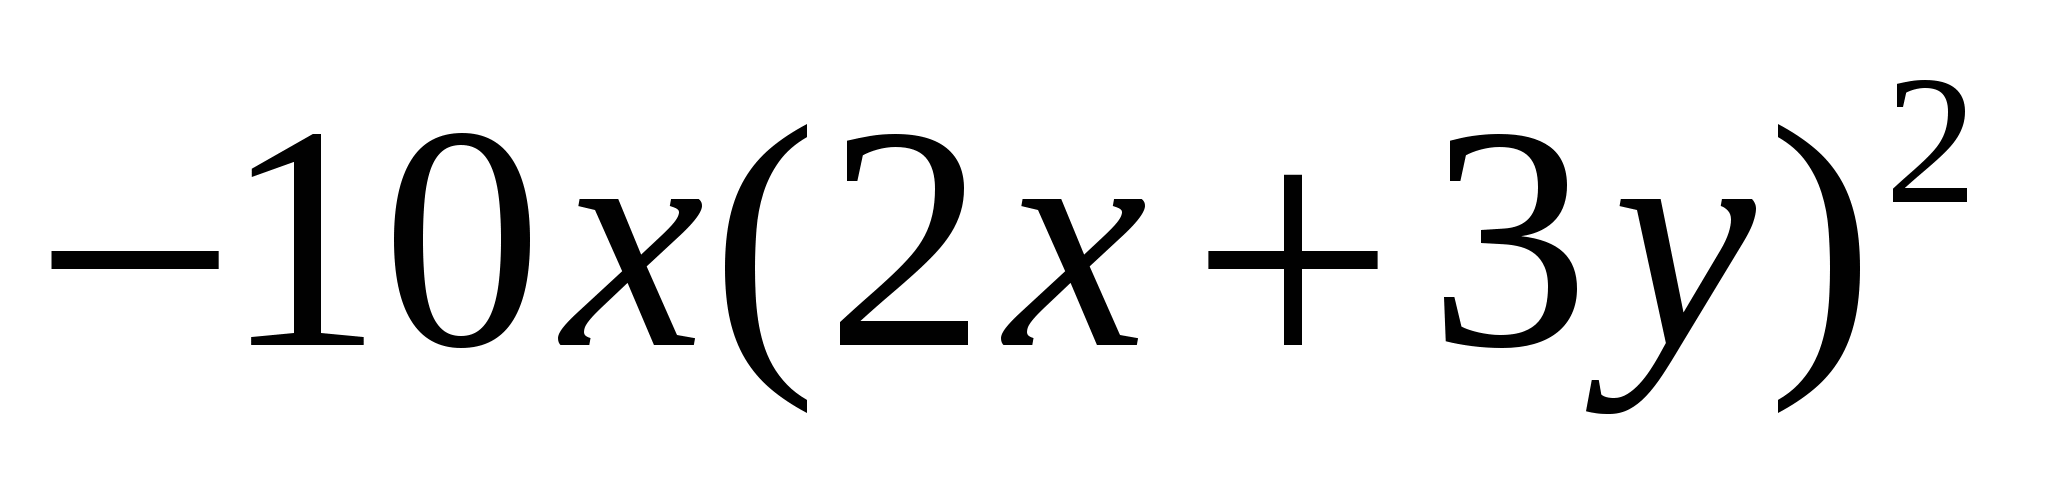 Урок алгебры в 7 классе по теме « Разложение многочленов на множители»